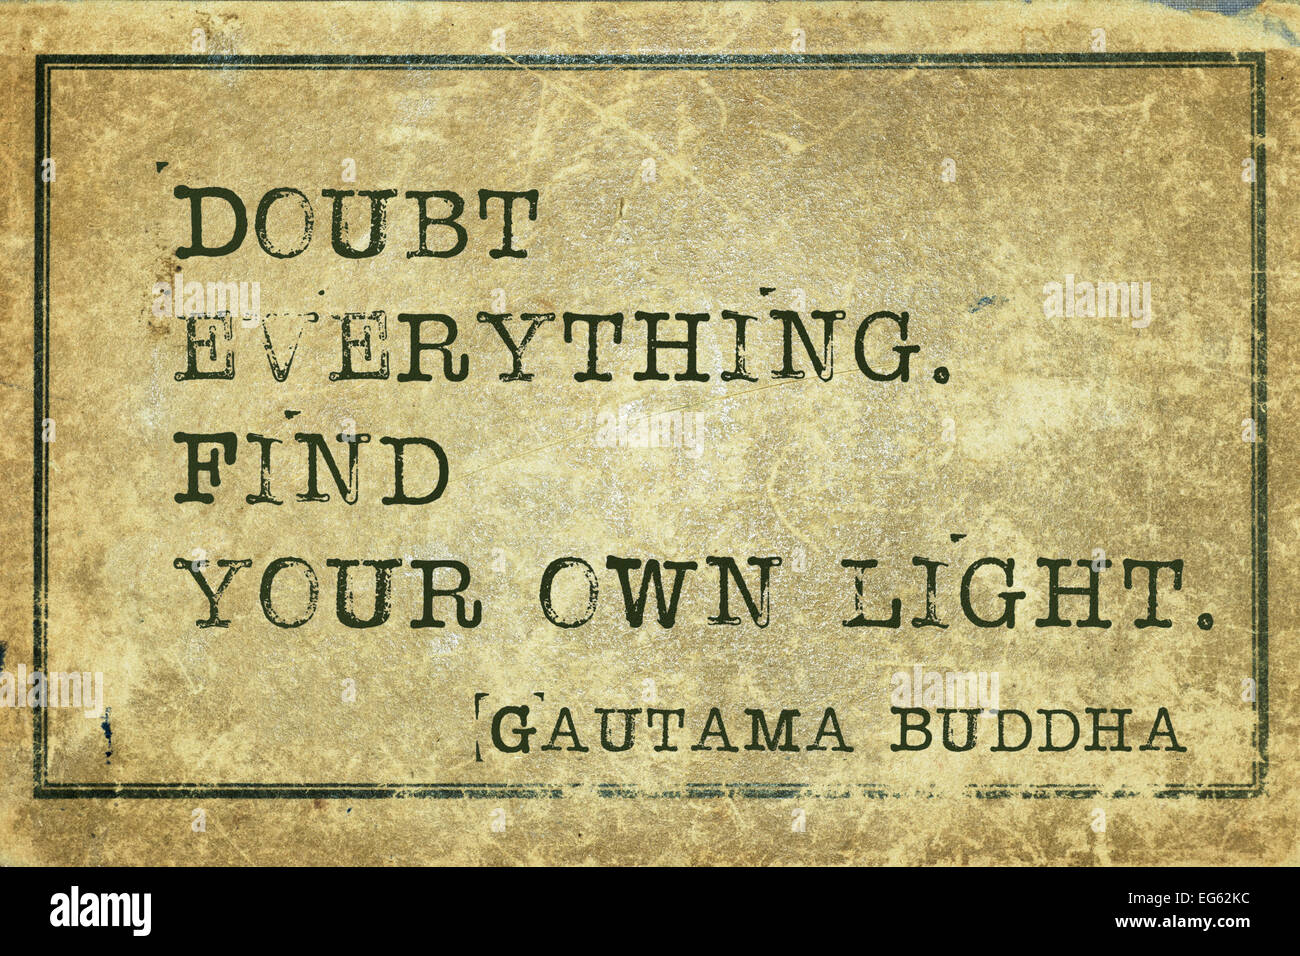 Alles zu zweifeln. Finden Sie Ihre eigene Licht - berühmte Buddha Zitat auf Grunge Vintage Karton gedruckt Stockfoto